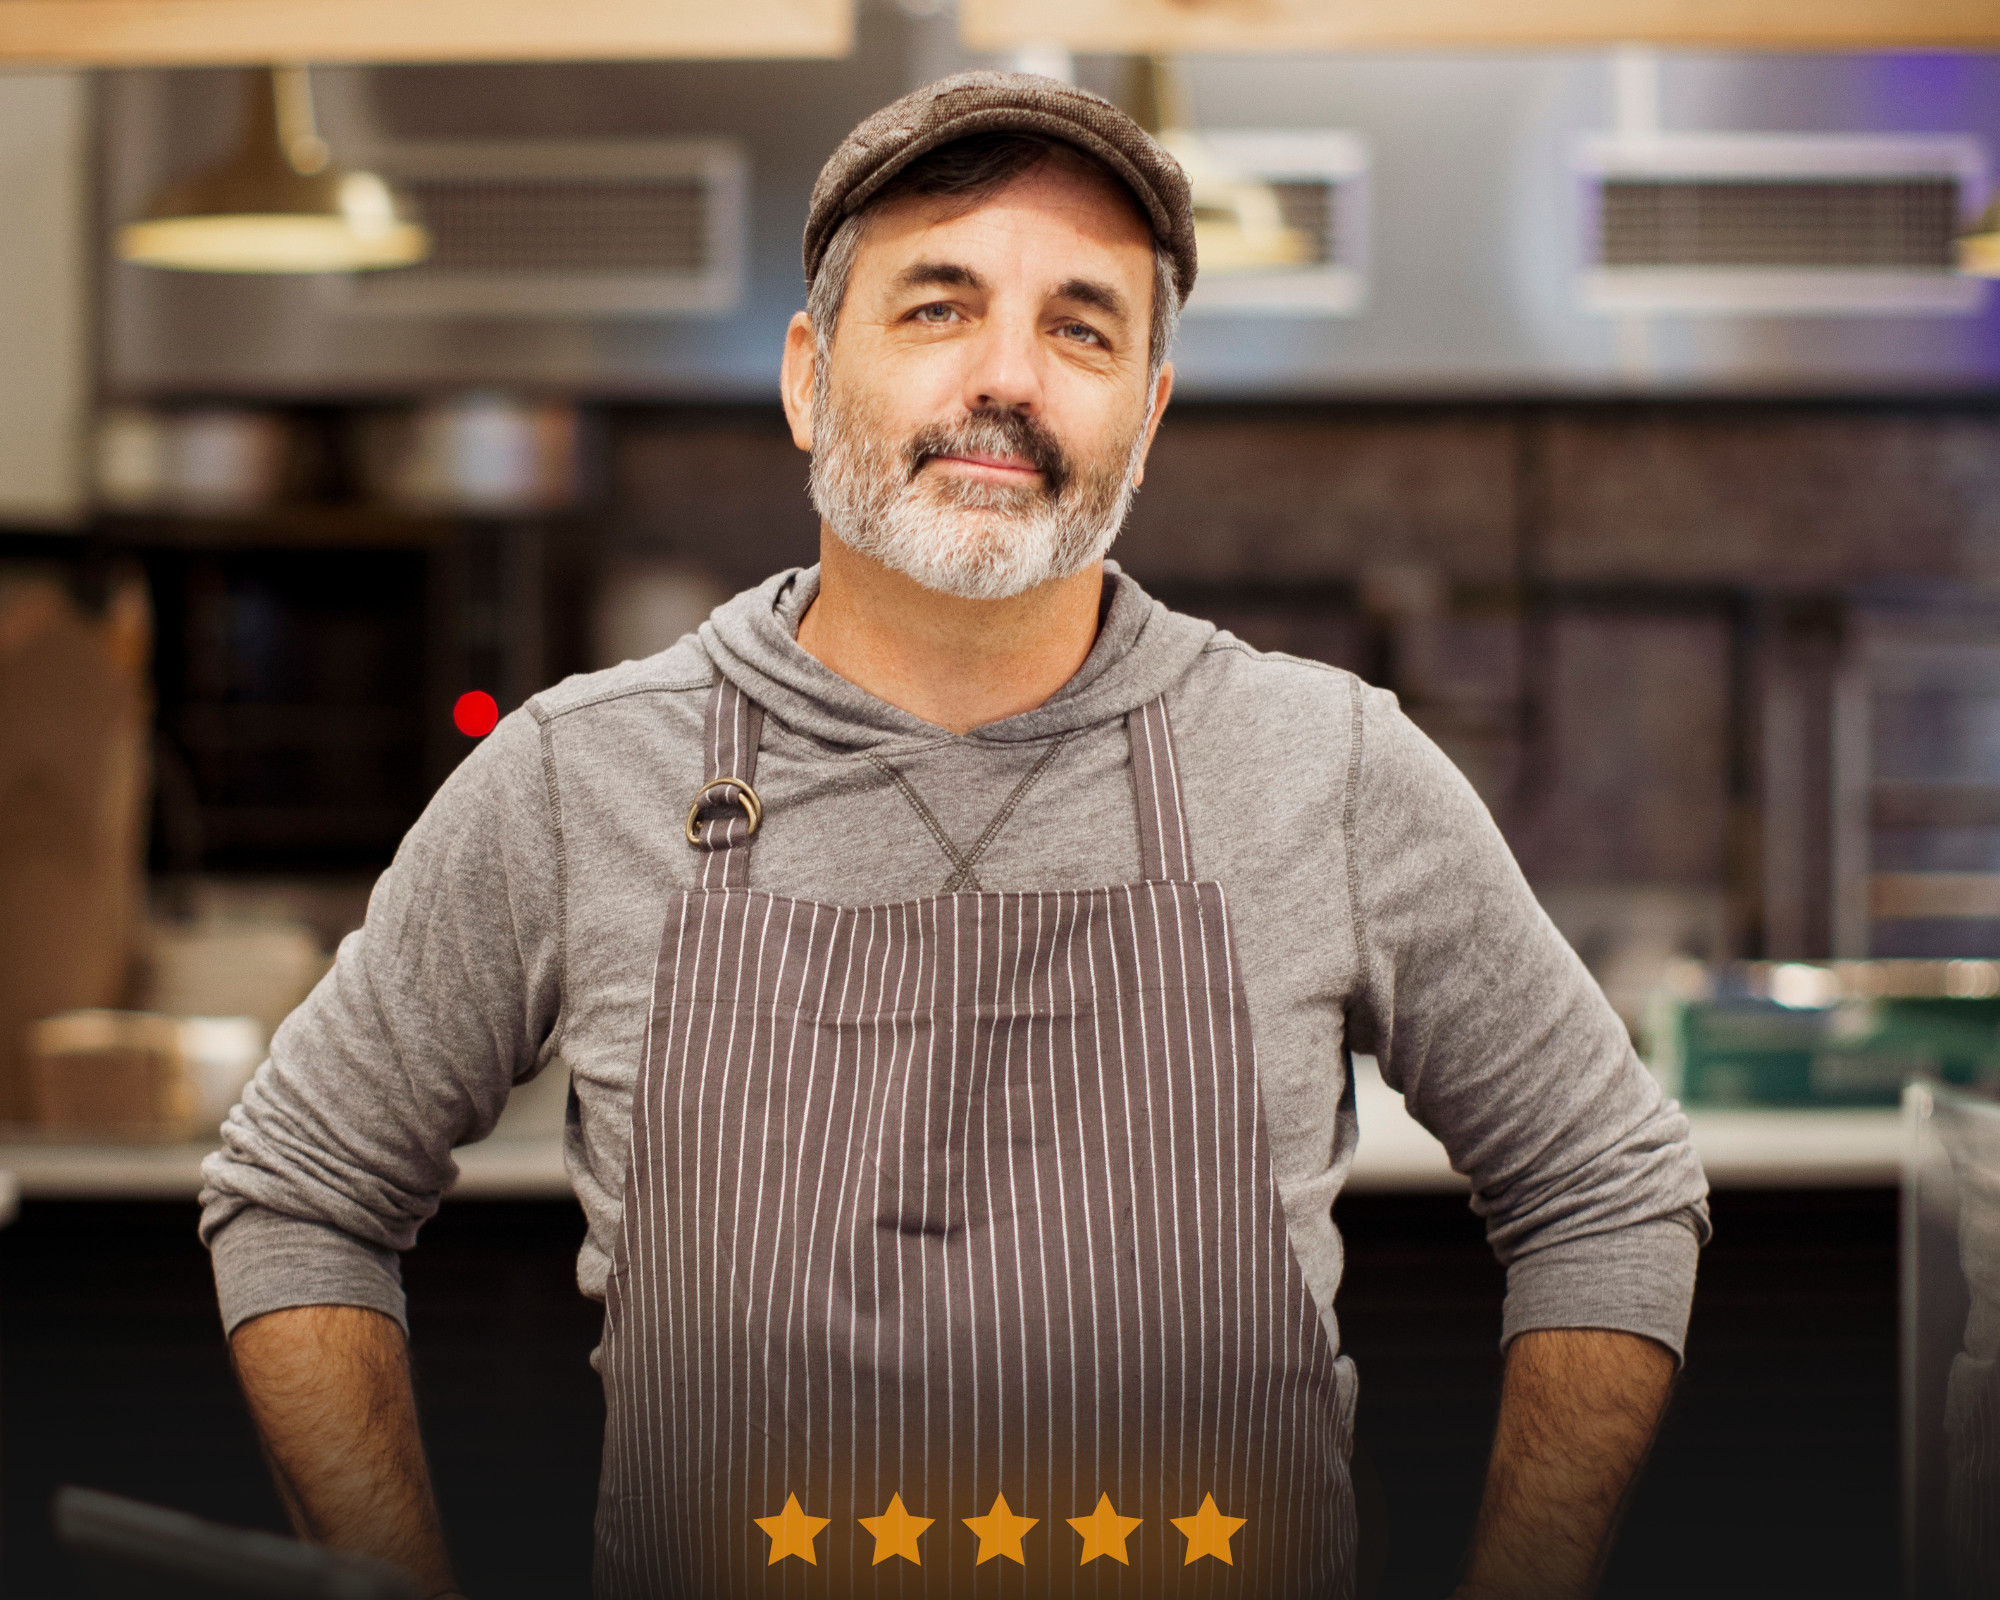 Chef cuisinier mûr dans un restaurant avec un tablier et cinq étoiles de satisfaction client.